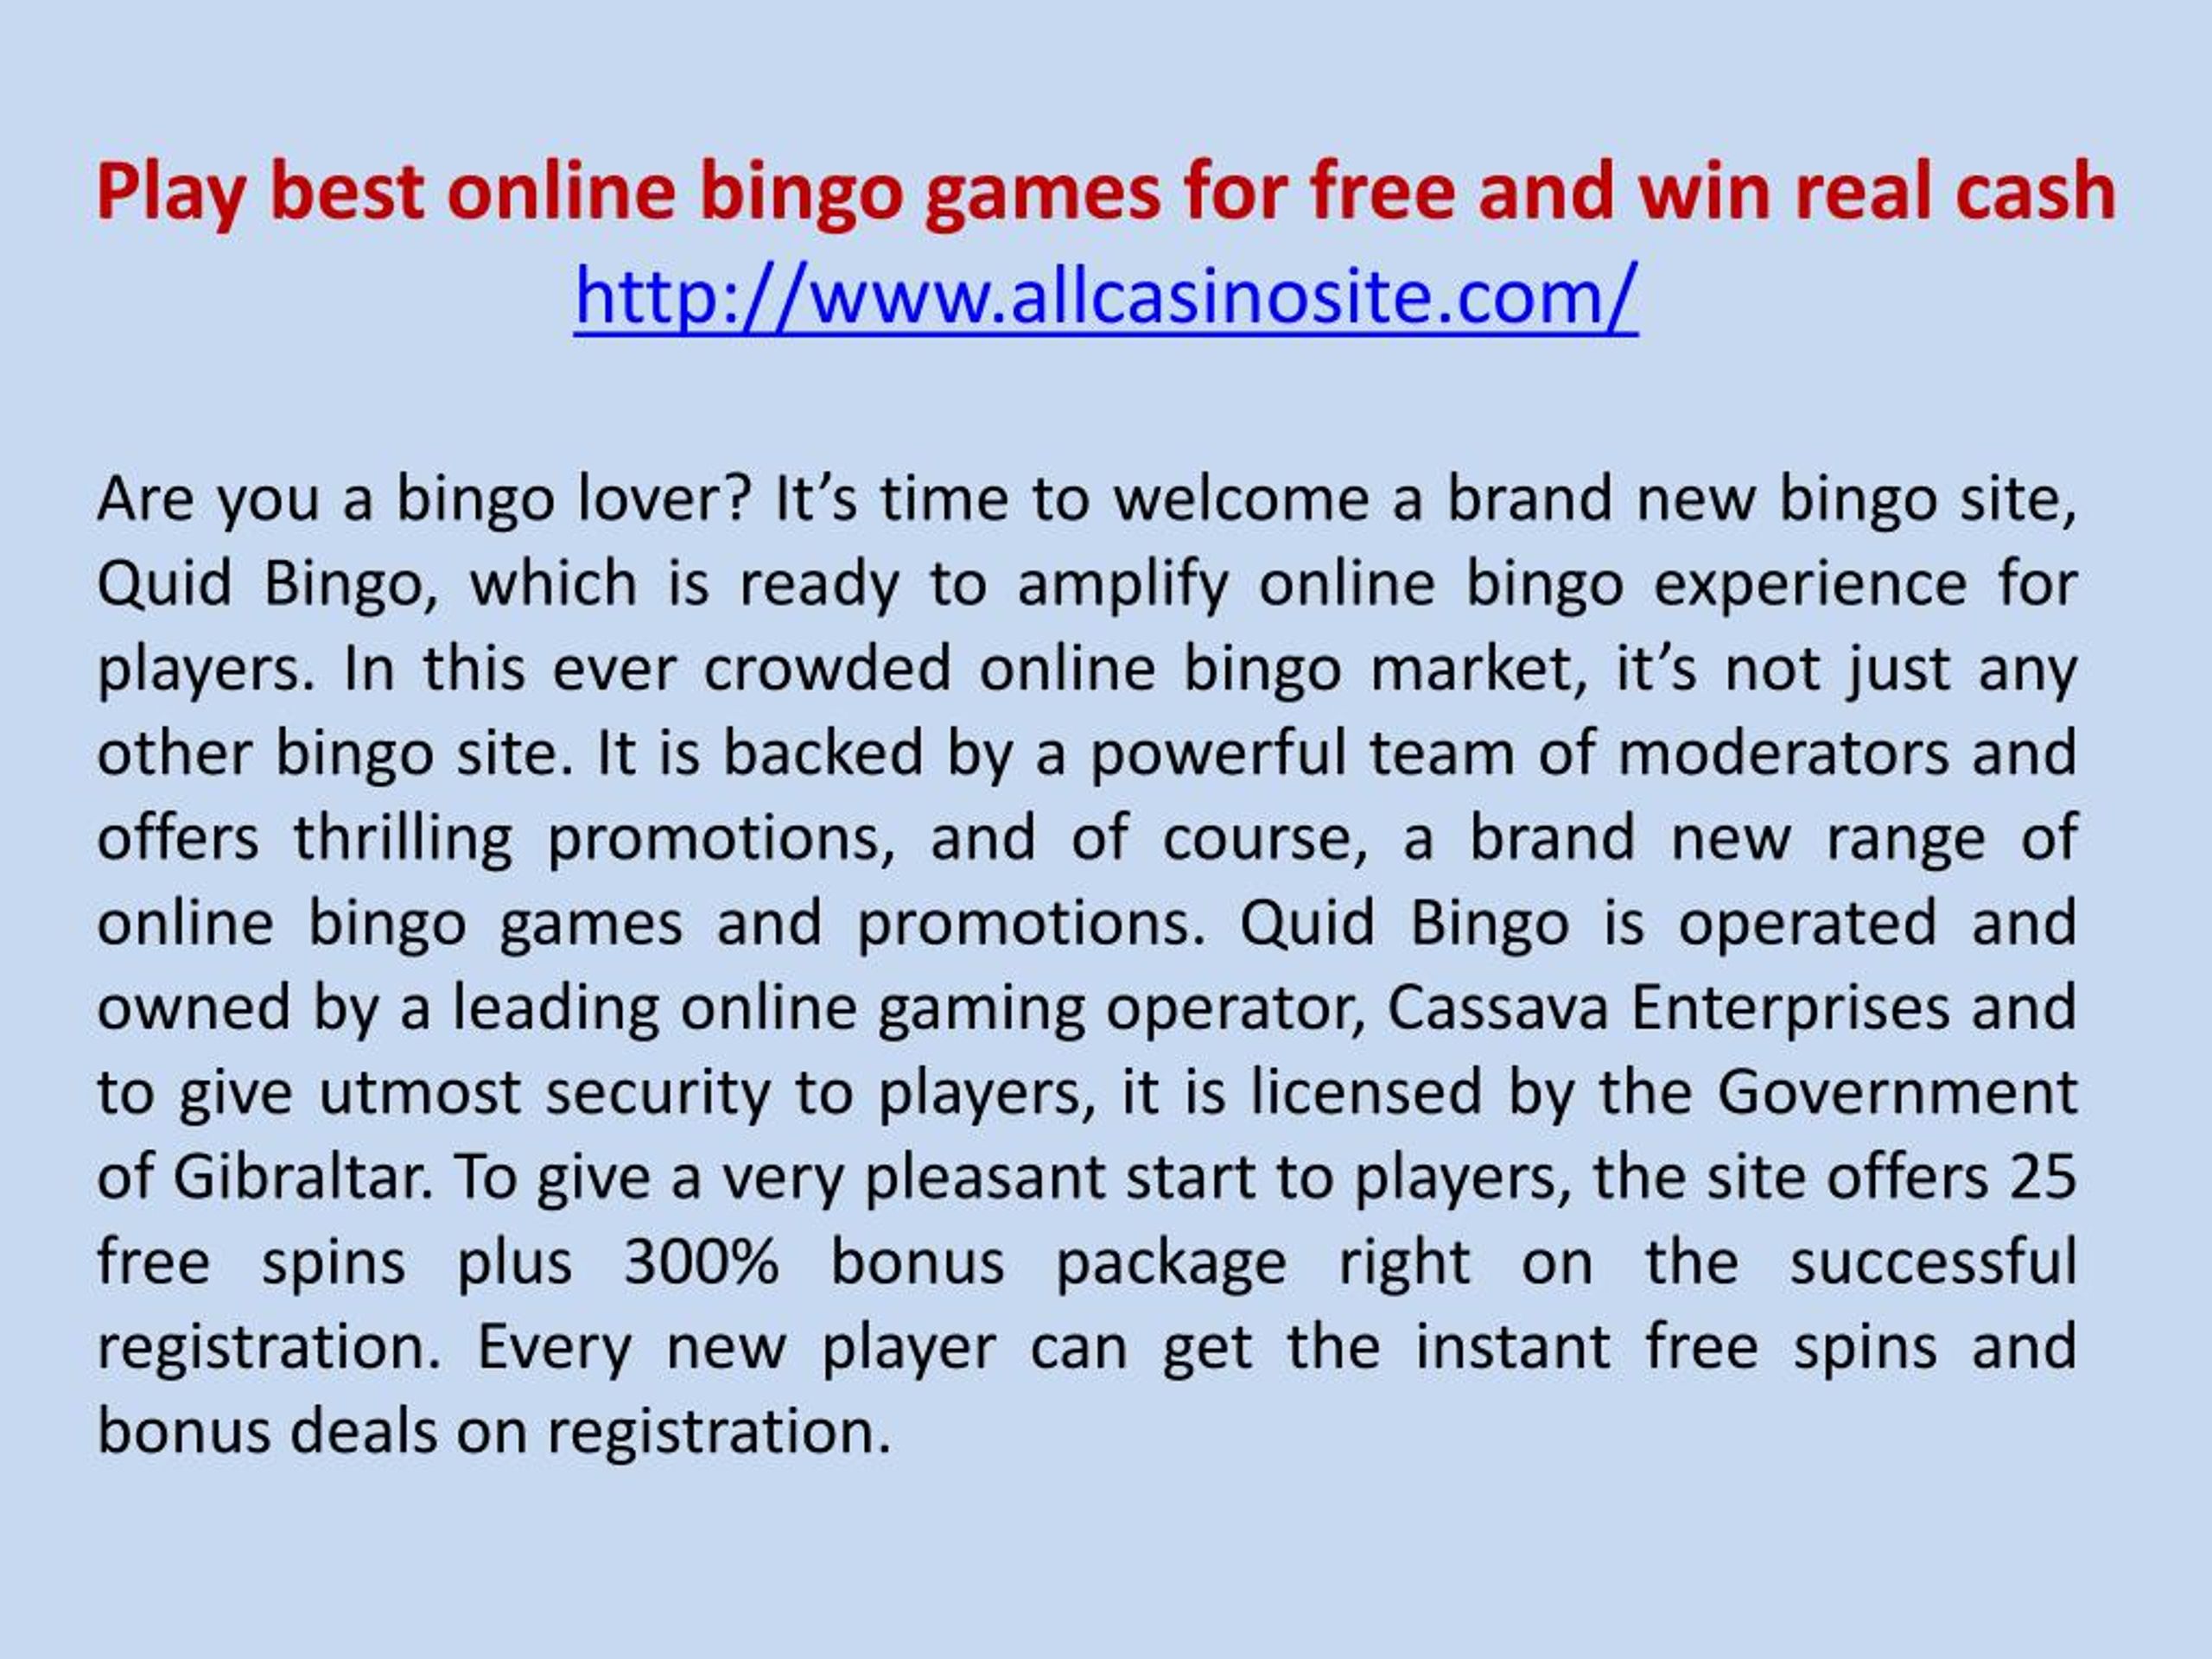 Best bingo site to win money online, free